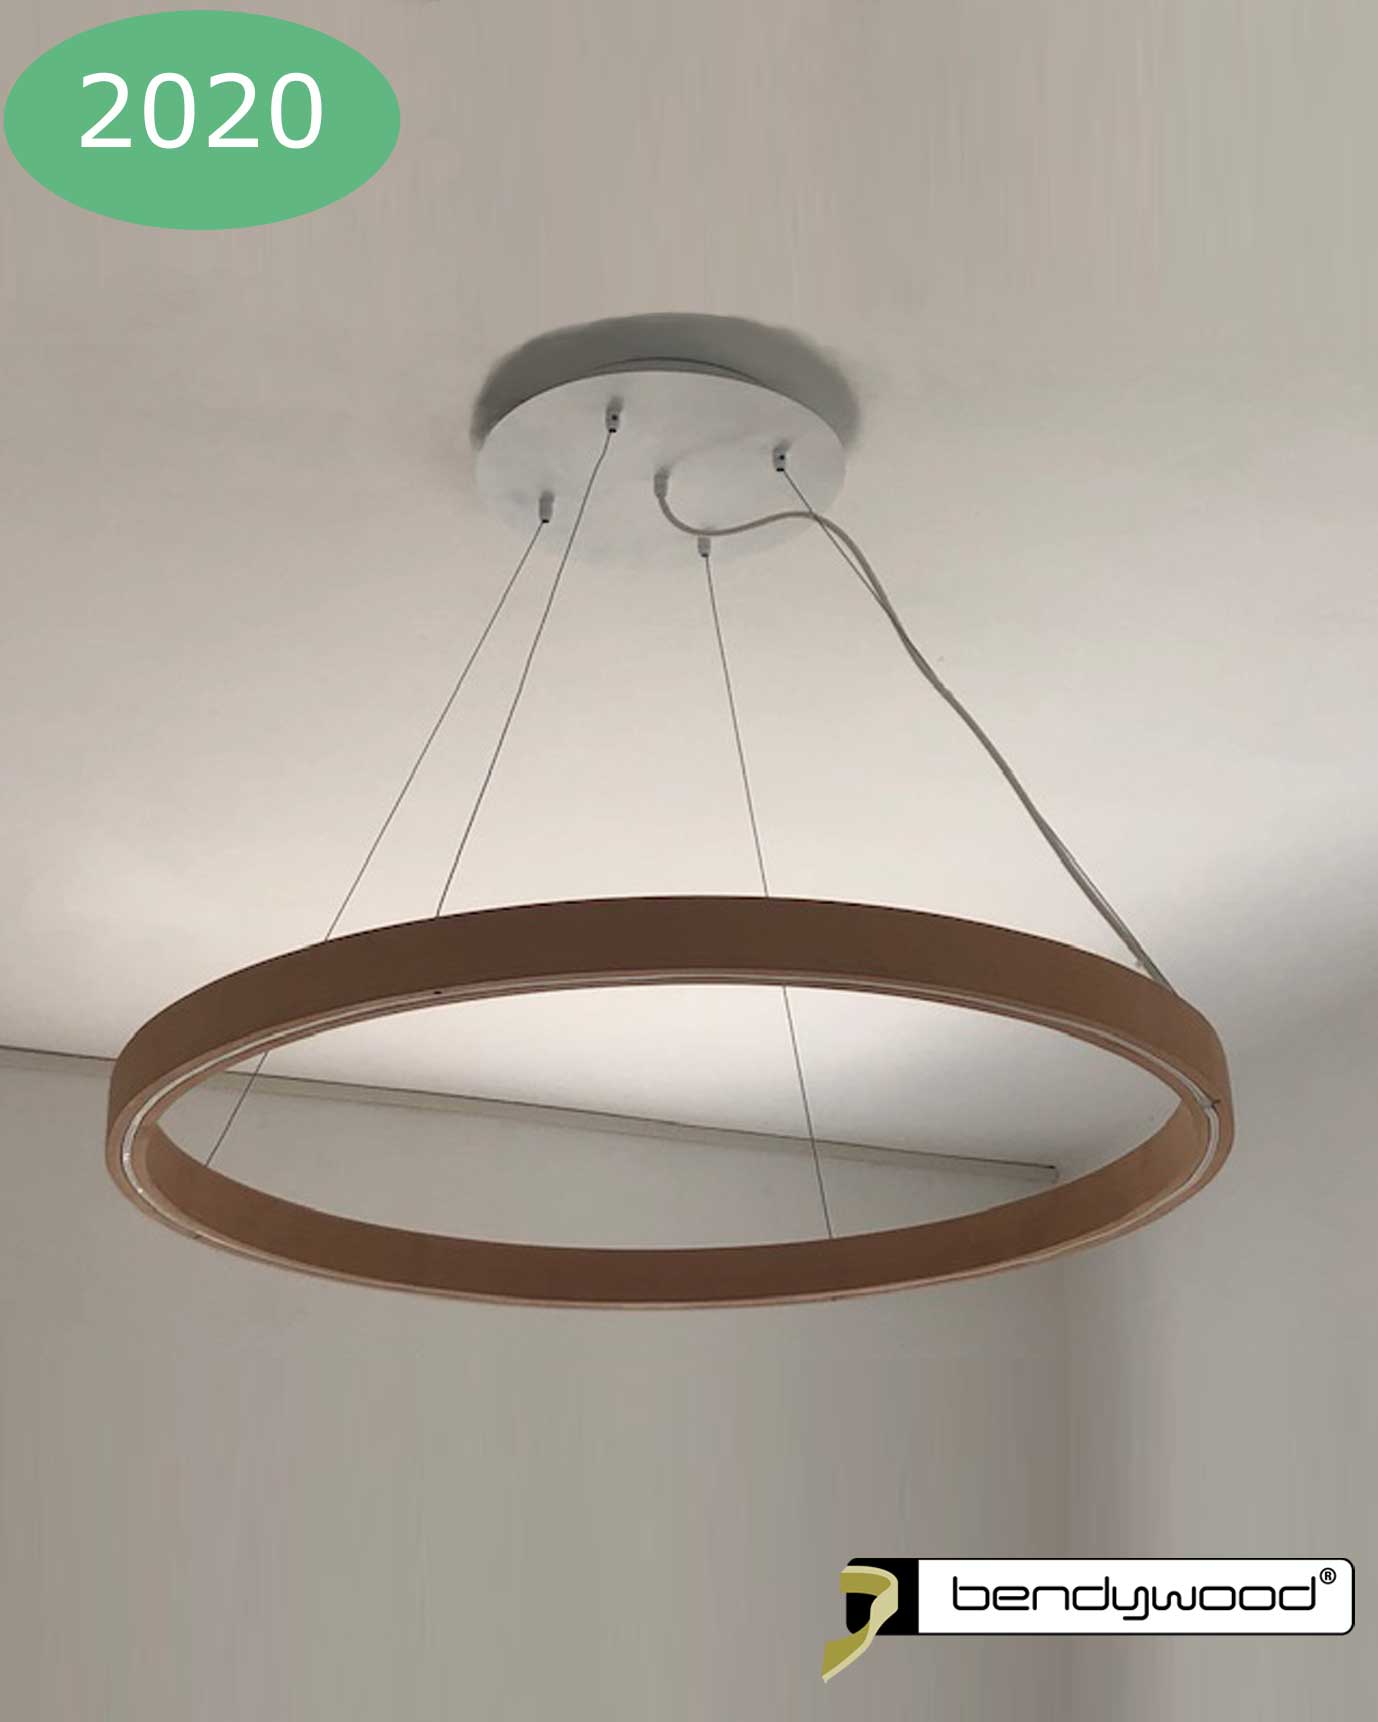 Wooden ring 50 cm in Bendywood® for pendant light